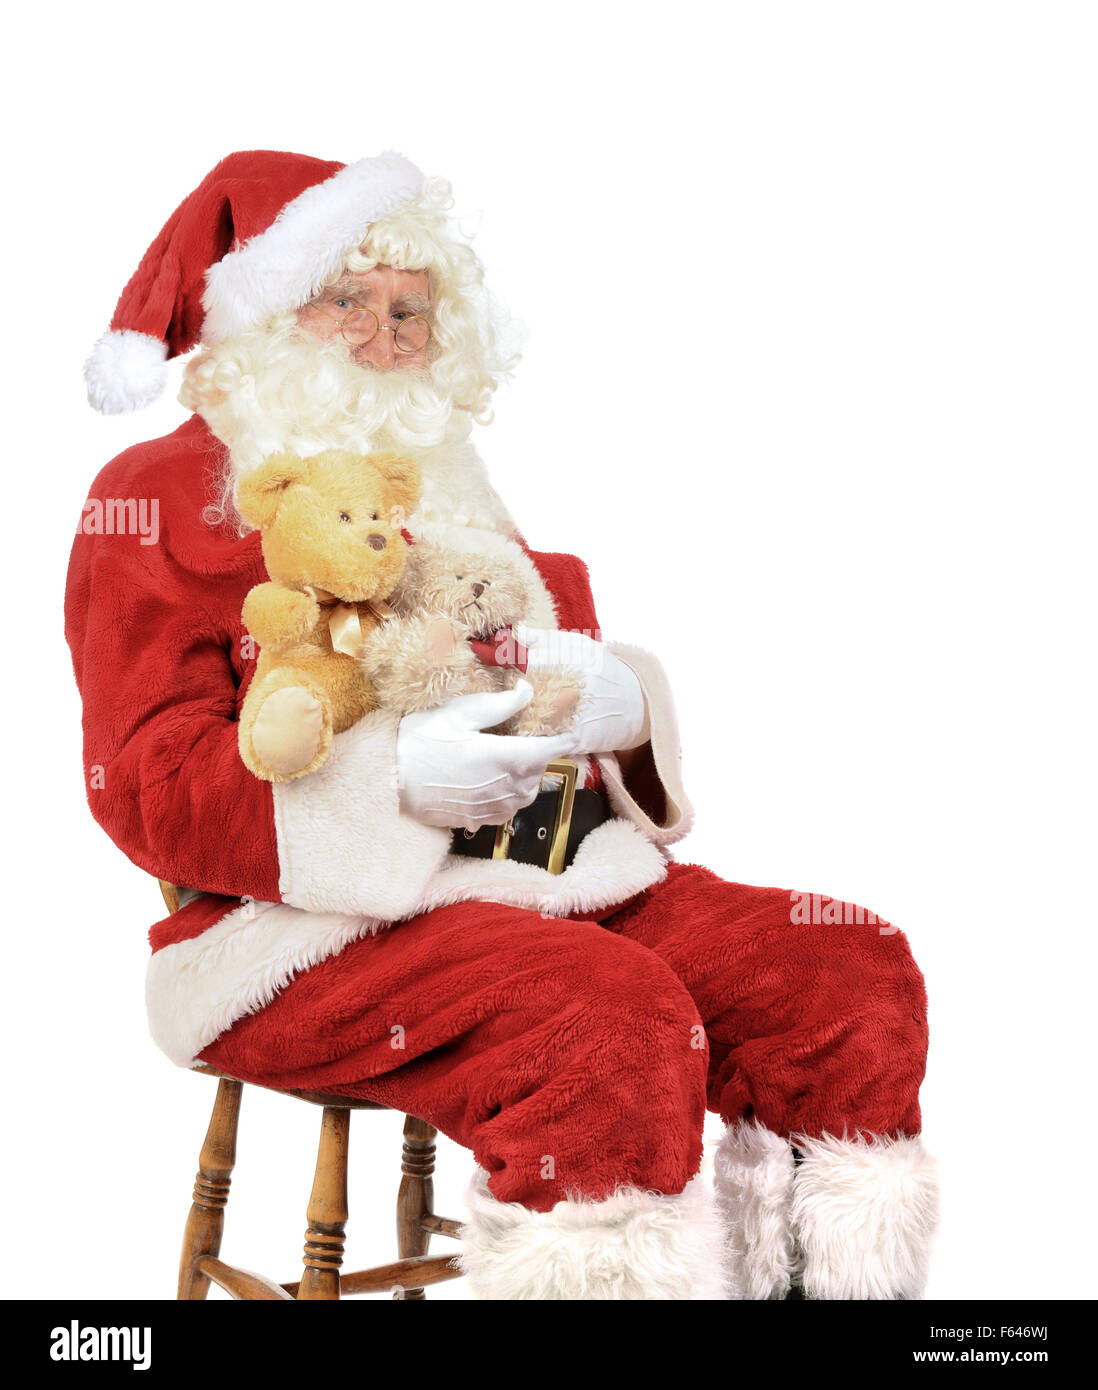 Weihnachtsmann sitzt auf einem Stuhl halten Teddybären für Weihnachten Stockfoto